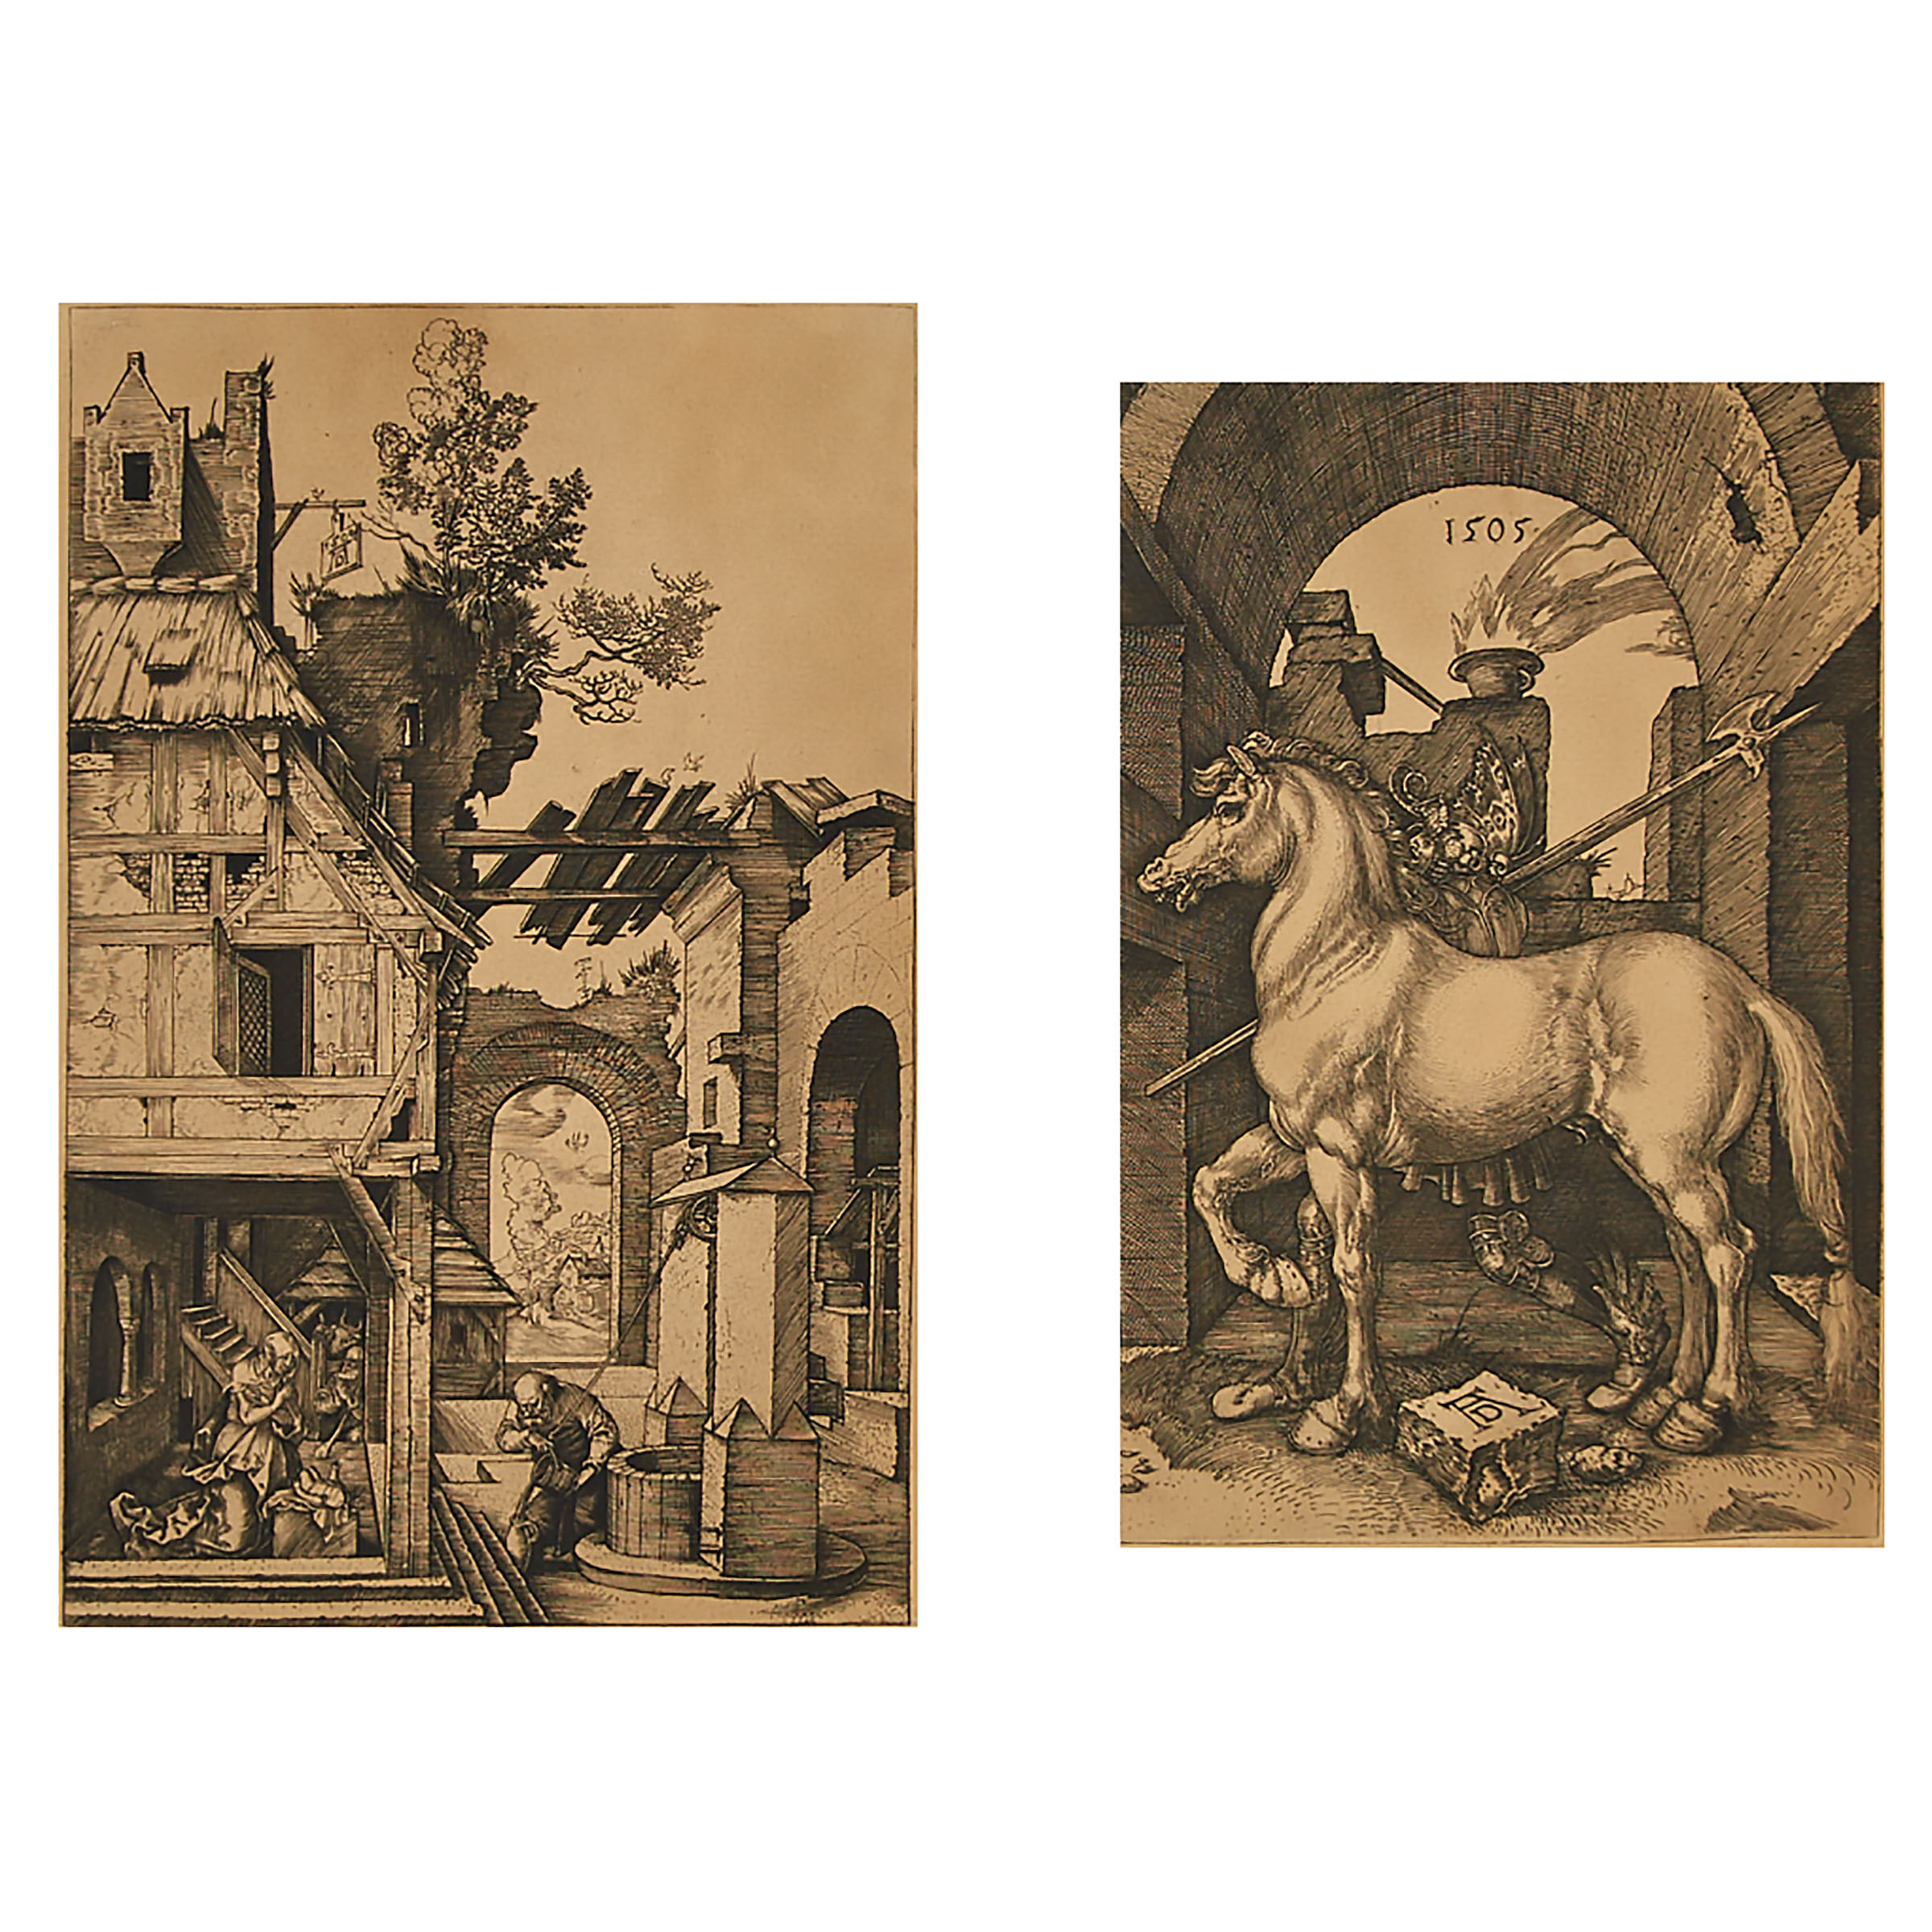 After Albrecht Dürer (1471-1528)